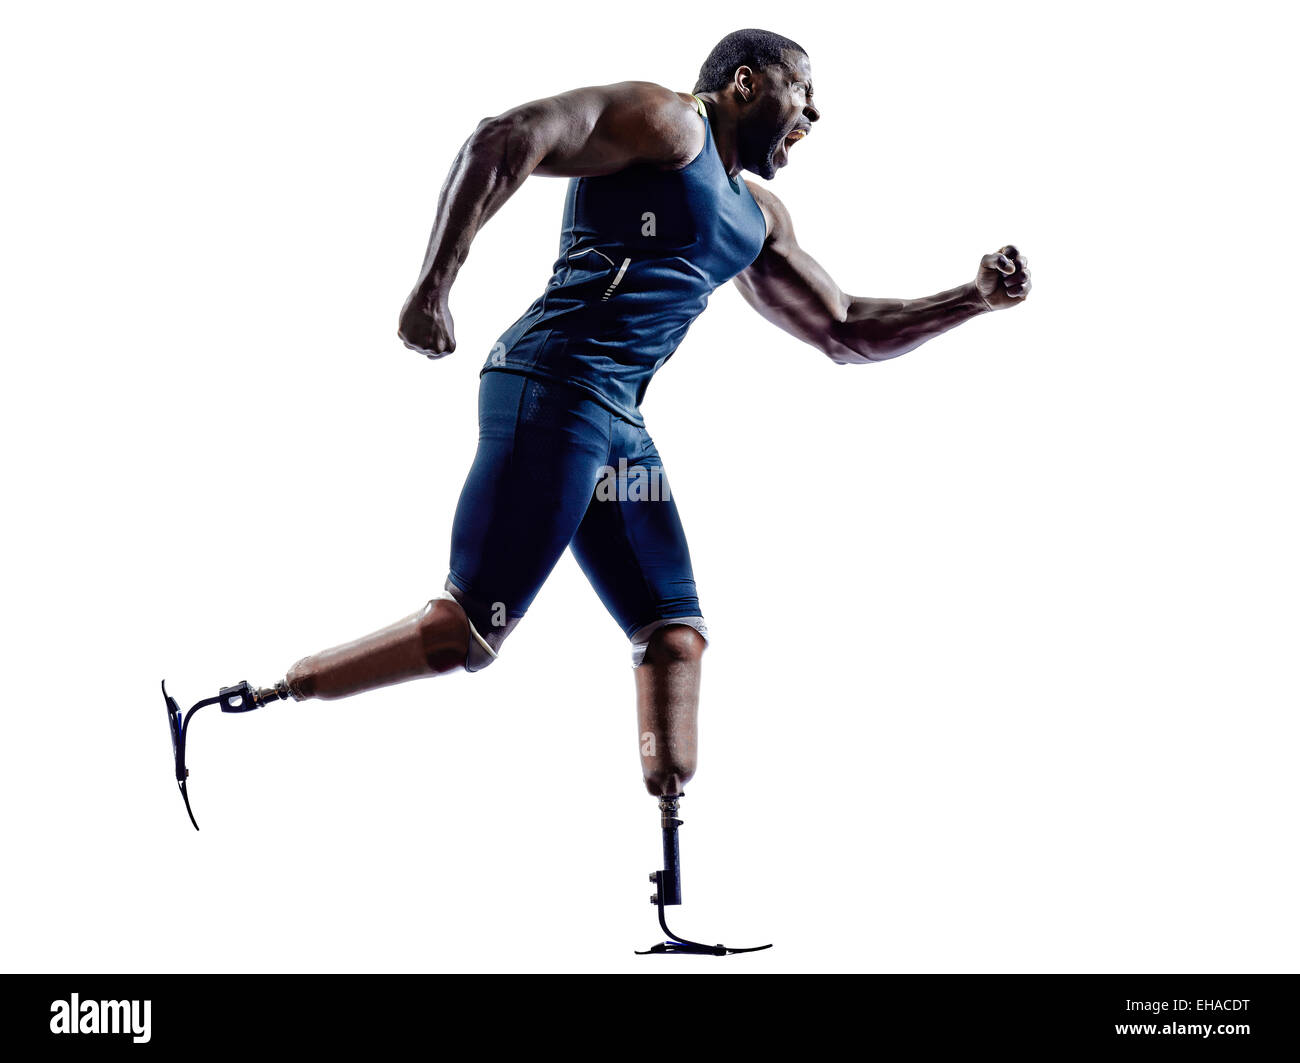 Un homme handicapé ossature musculaire sprinters avec prothèse jambes en silhouette sur fond blanc Banque D'Images